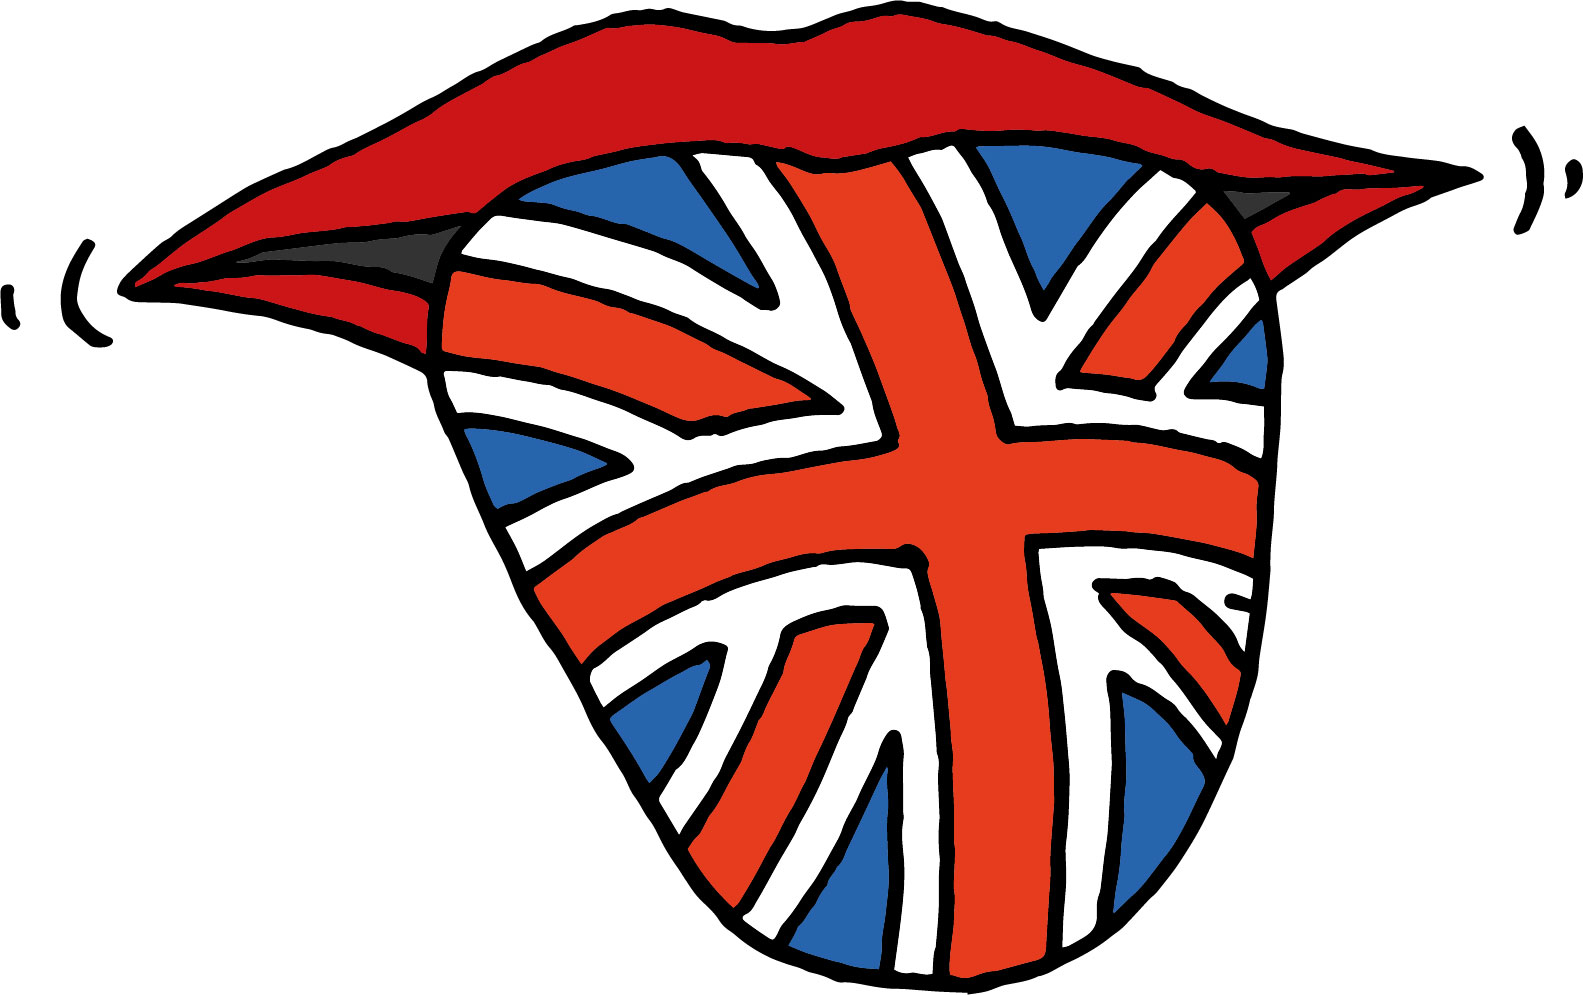 Jazykohrátky - anglická konverzace pro mírně pokročilé   